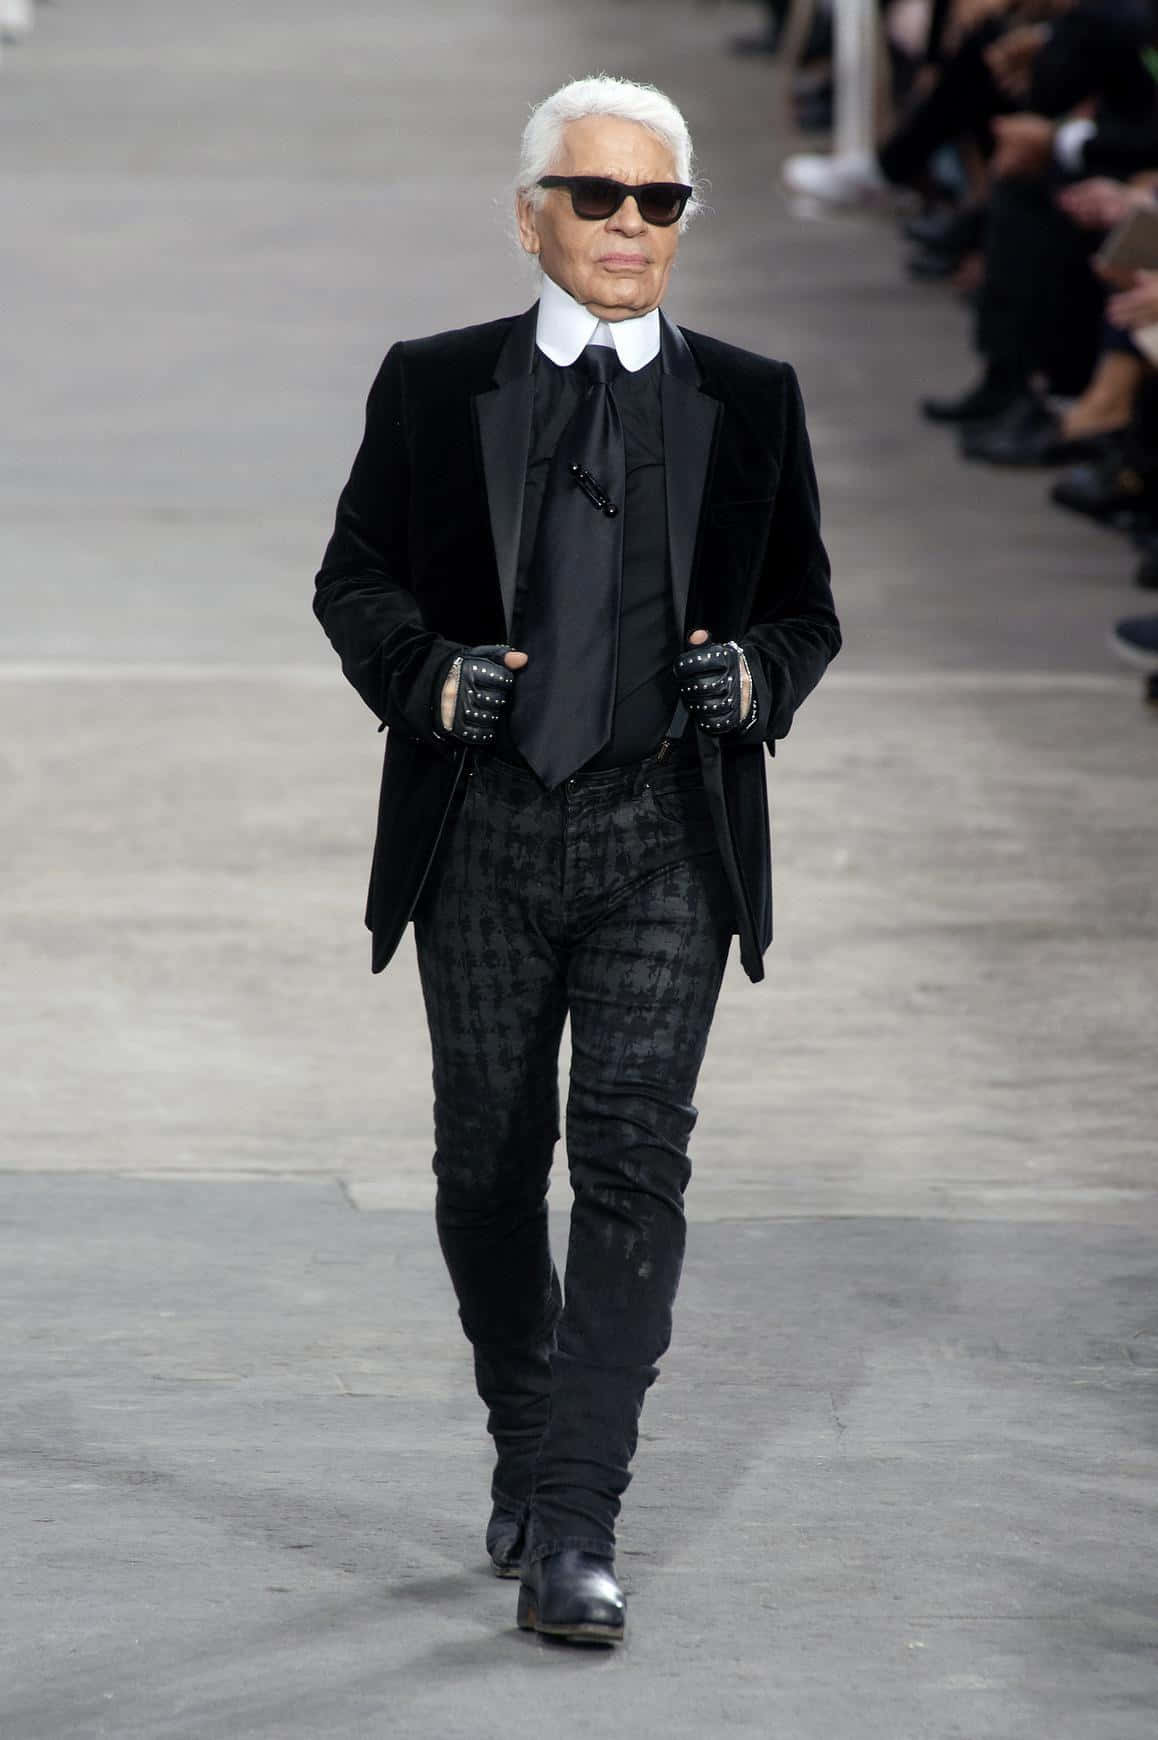 Karl Lagerfeld in his iconic dark glasses and fingerless gloves Wallpaper